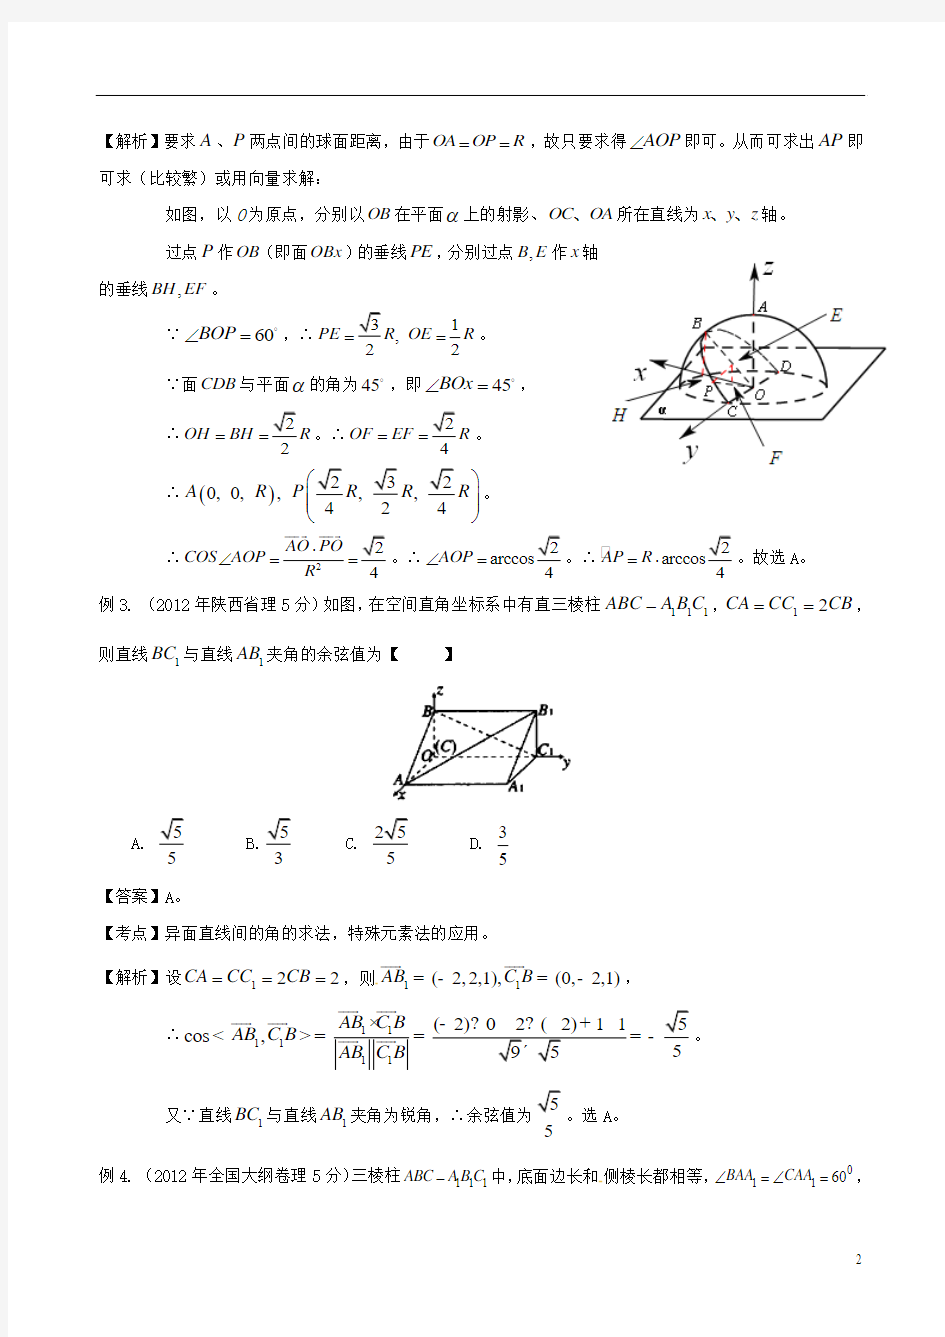 【备战2014】高考数学 高频考点归类分析 关于空间距离和空间角的问题(真题为例)